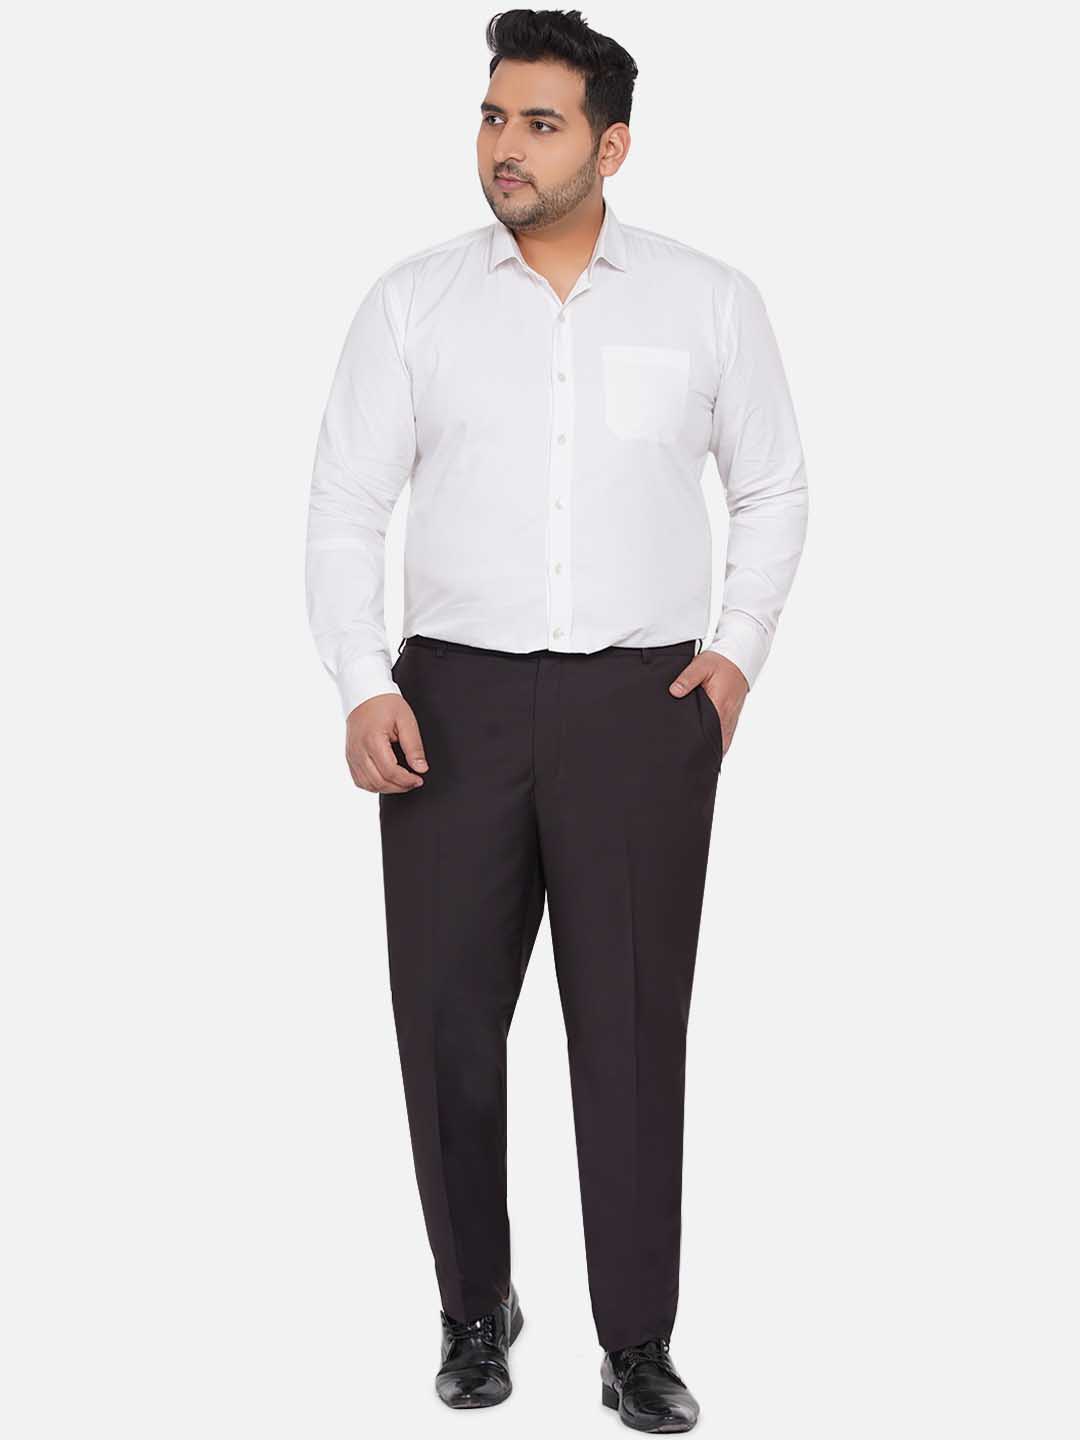 bottomwear/trousers/JPTR22010E/jptr22010e-6.jpg